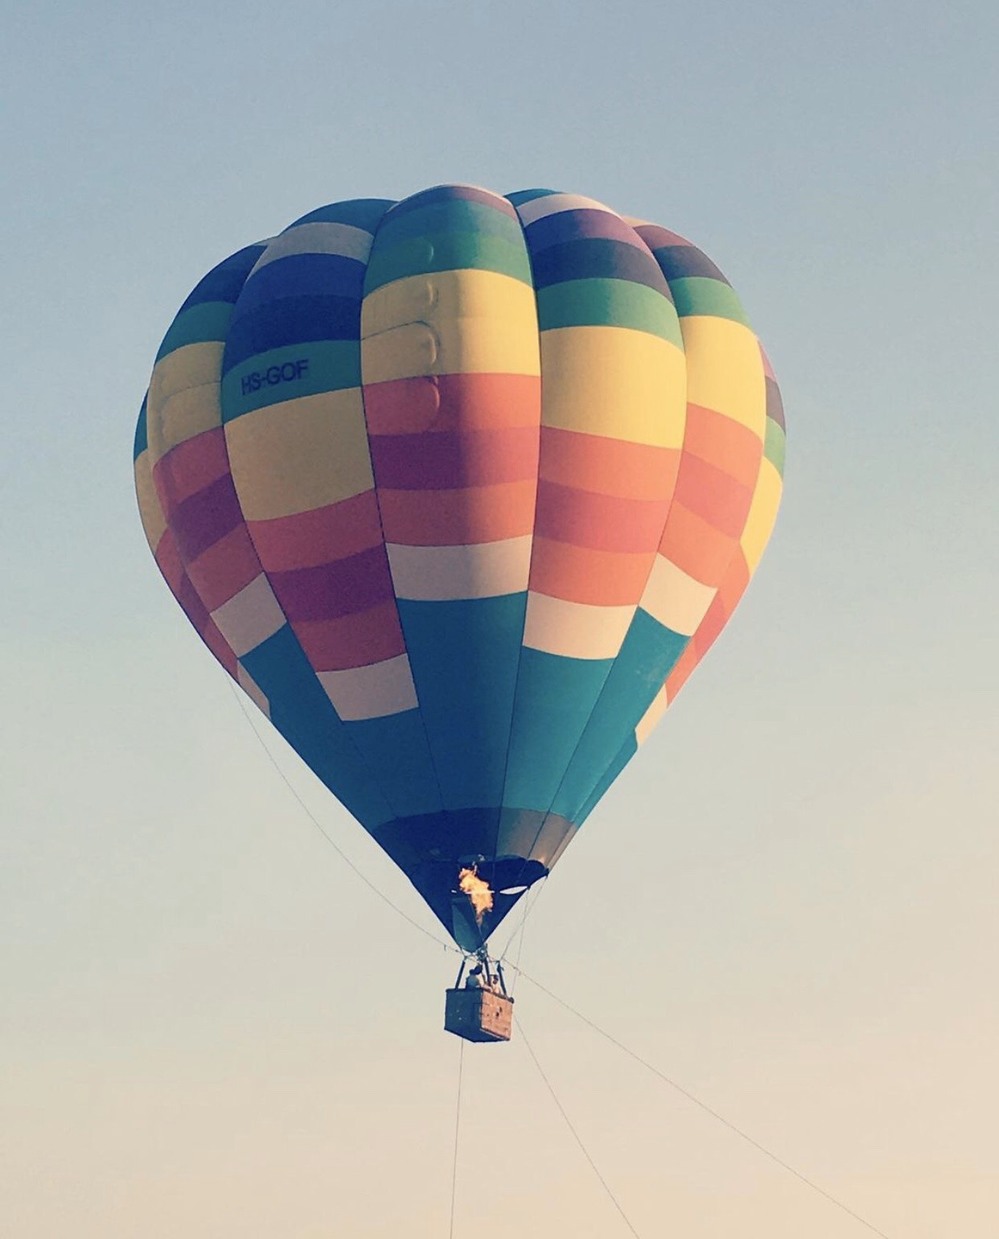 Dự kiến khinh khí cầu tại Bà Rịa - Vũng Tàu sẽ phục vụ du khách bay hàng giờ đồng hồ. (Ảnh: @quynh_thoa_le_nguyen)